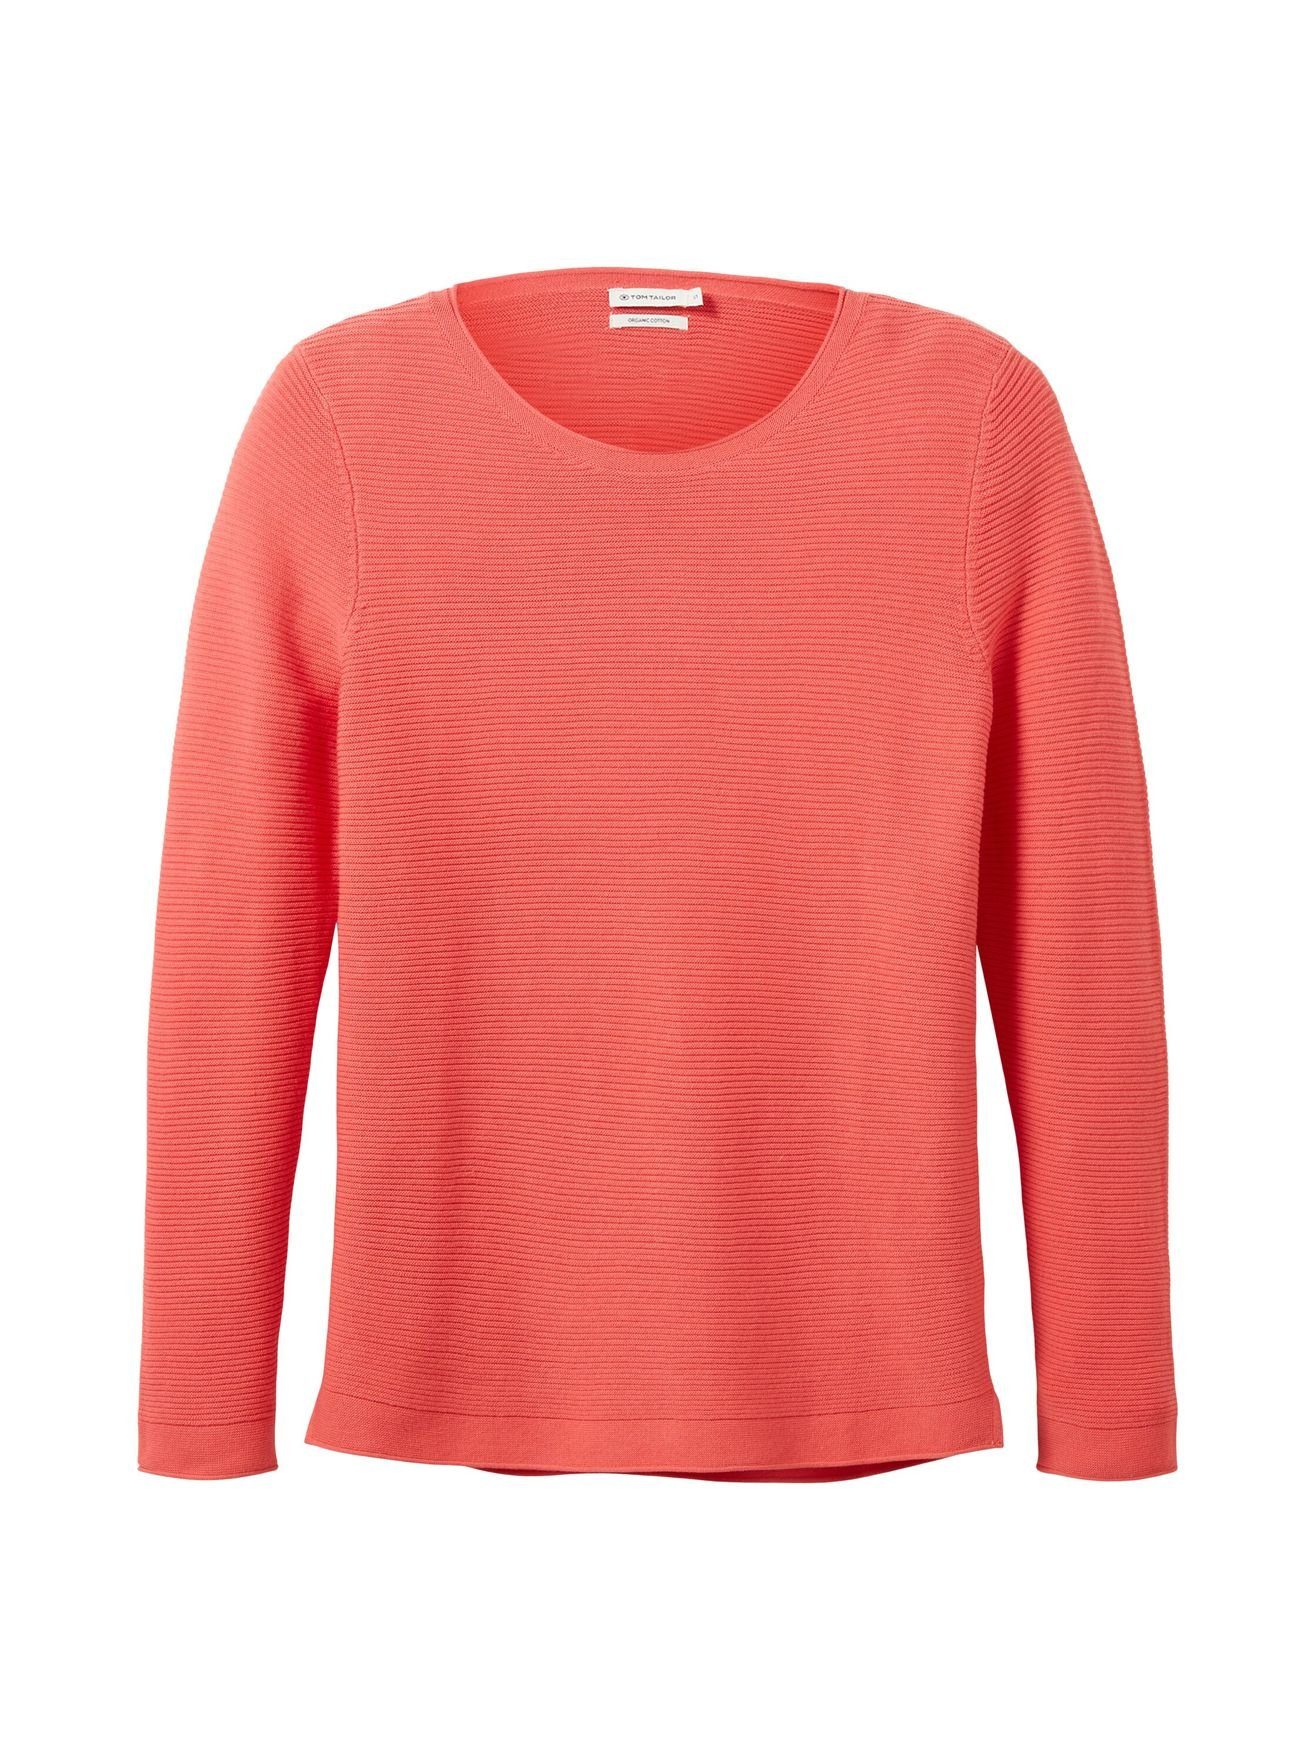 TOM TAILOR Strickpullover Orange OTTOMAN Sweater Rundhals aus in Langarm Baumwolle Neon 4656 Strickpullover